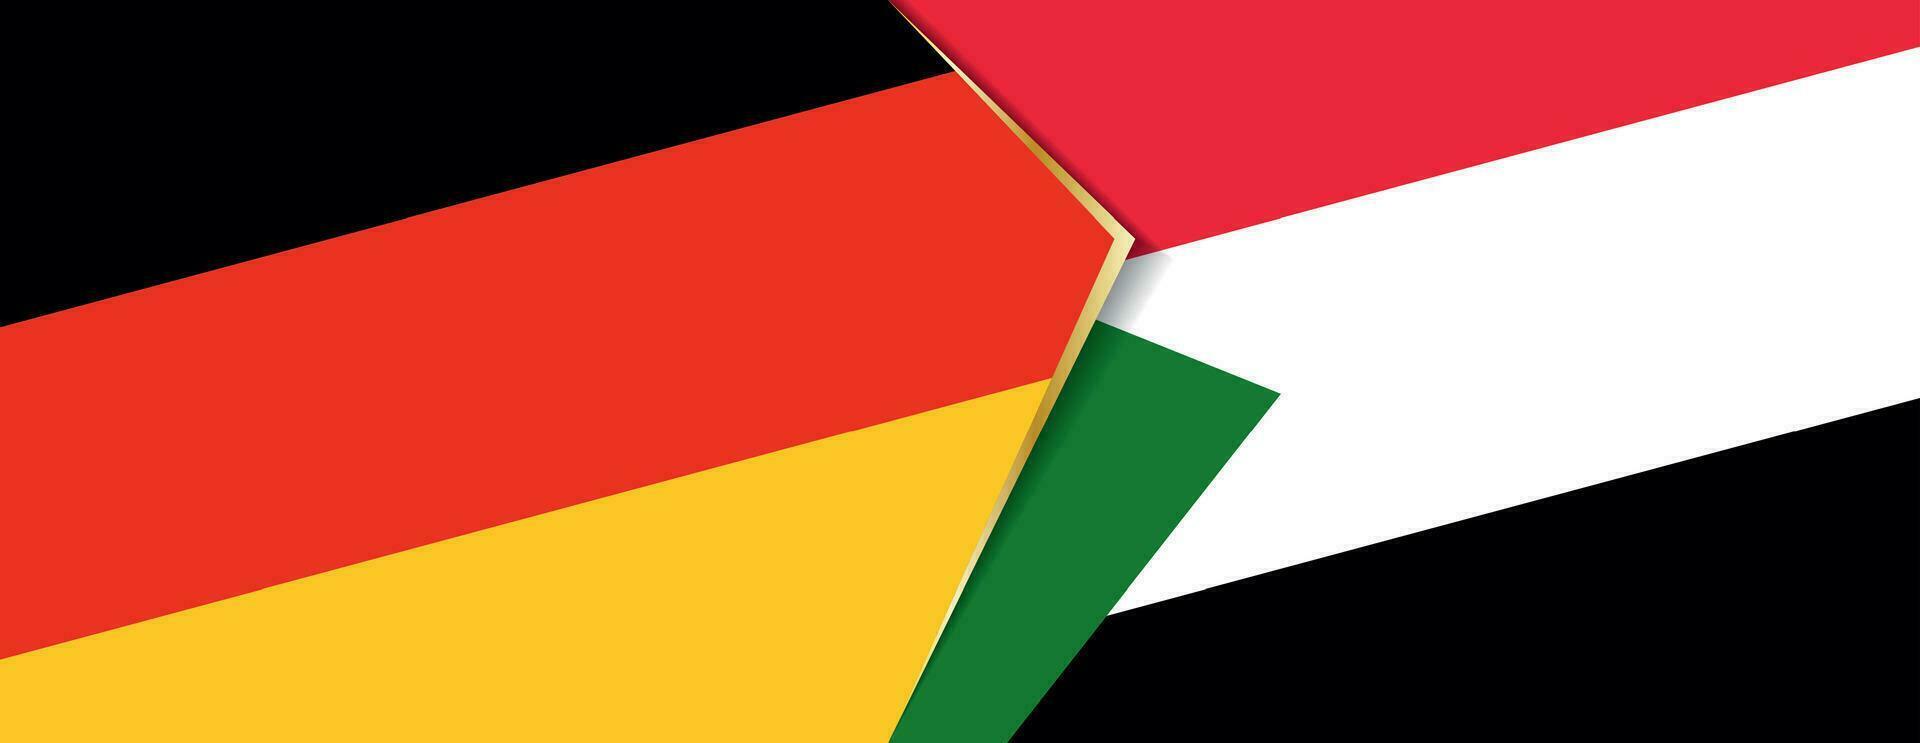 Deutschland und Sudan Flaggen, zwei Vektor Flaggen.